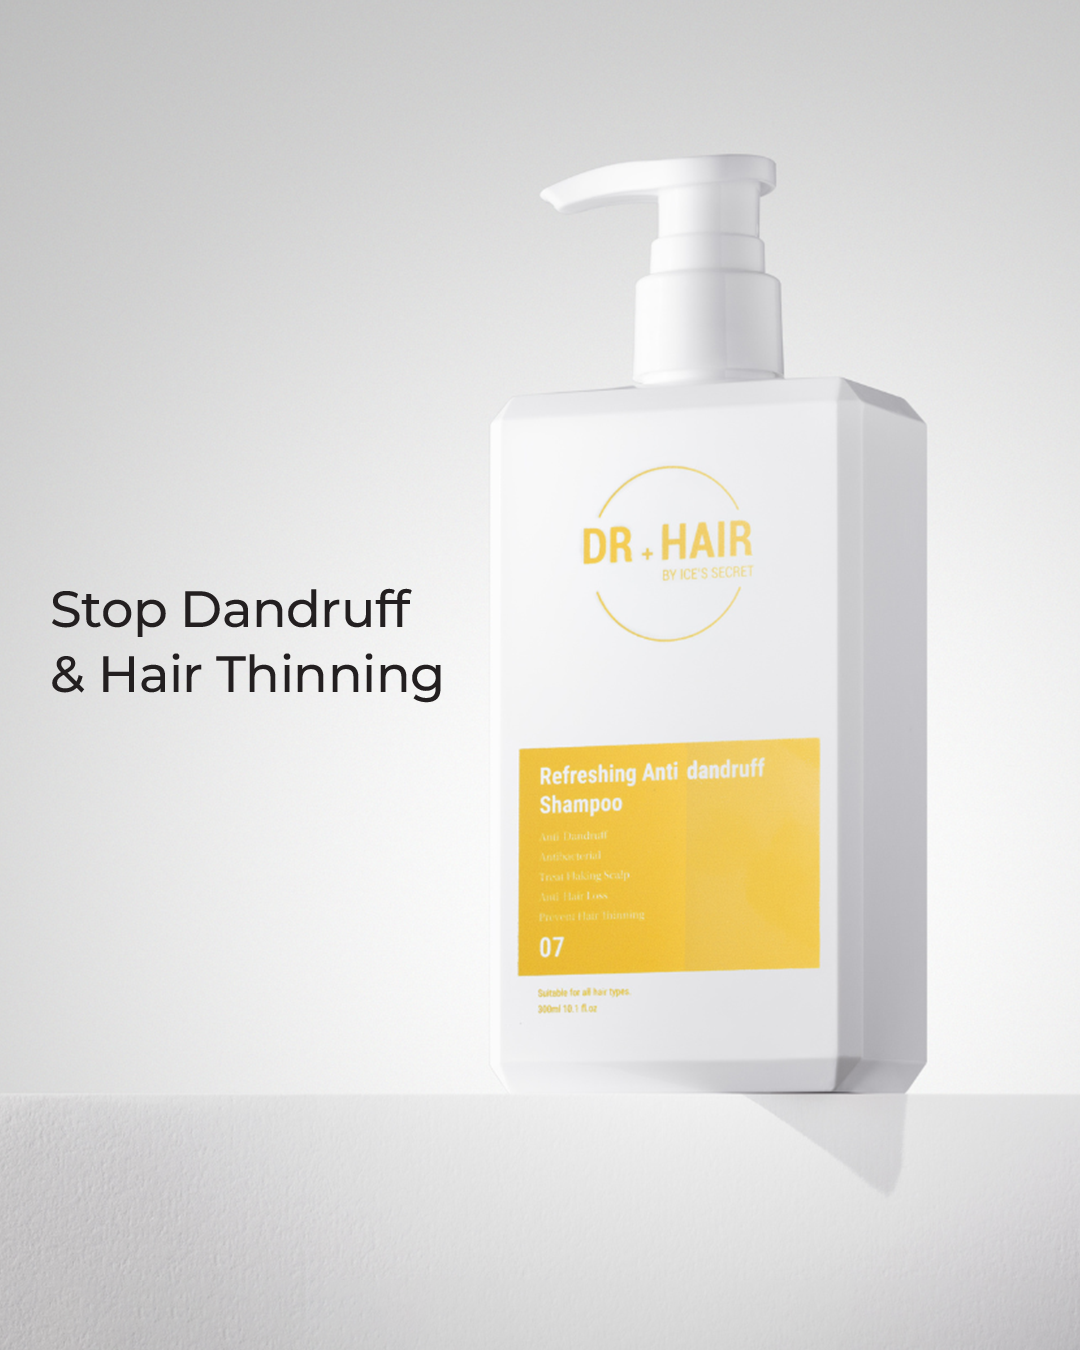 07 Refreshing Anti-Dandruff Shampoo